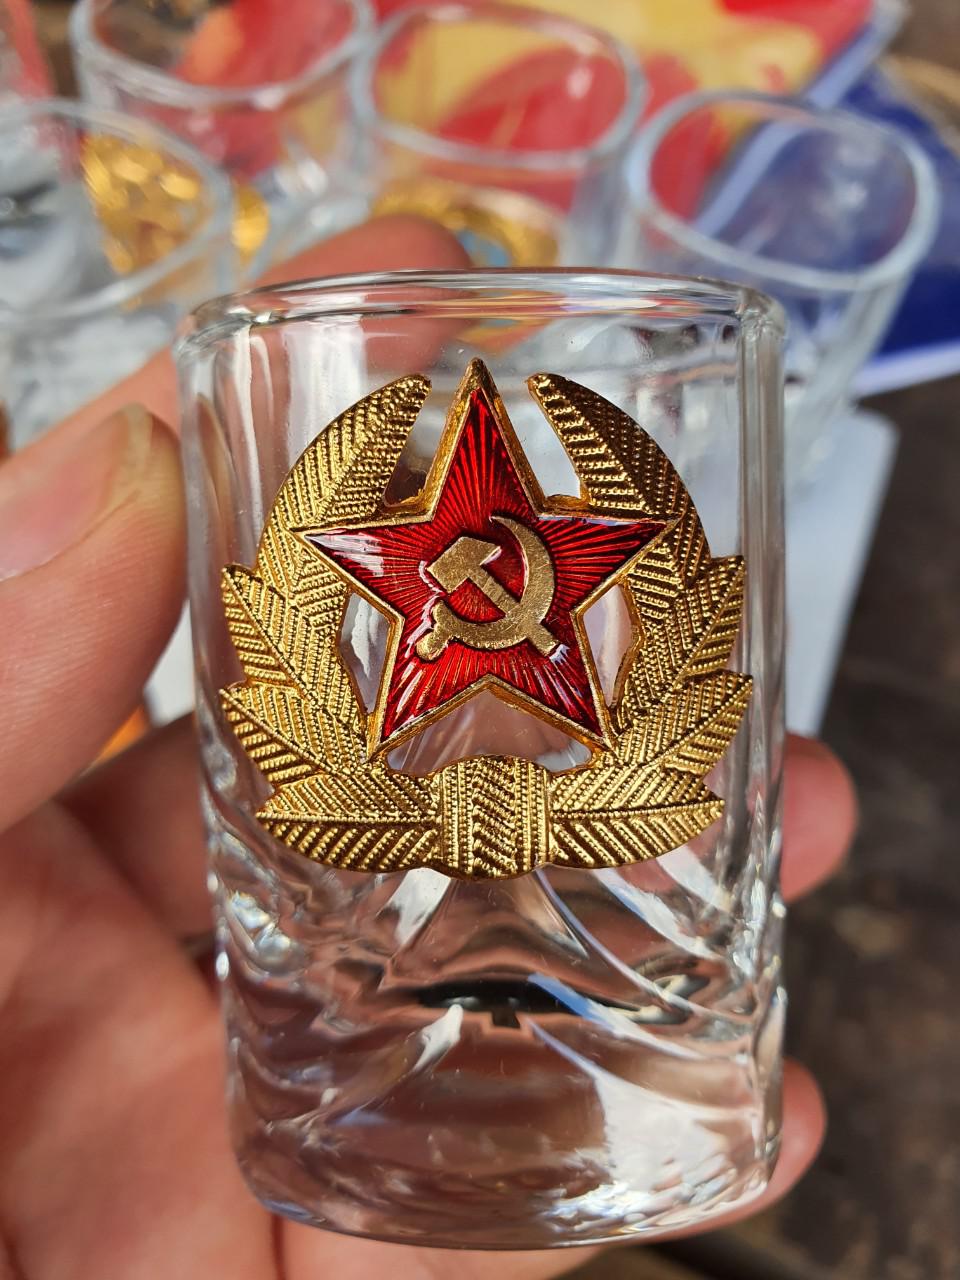 Bộ ly thủy tinh CCCP - Liên Xô